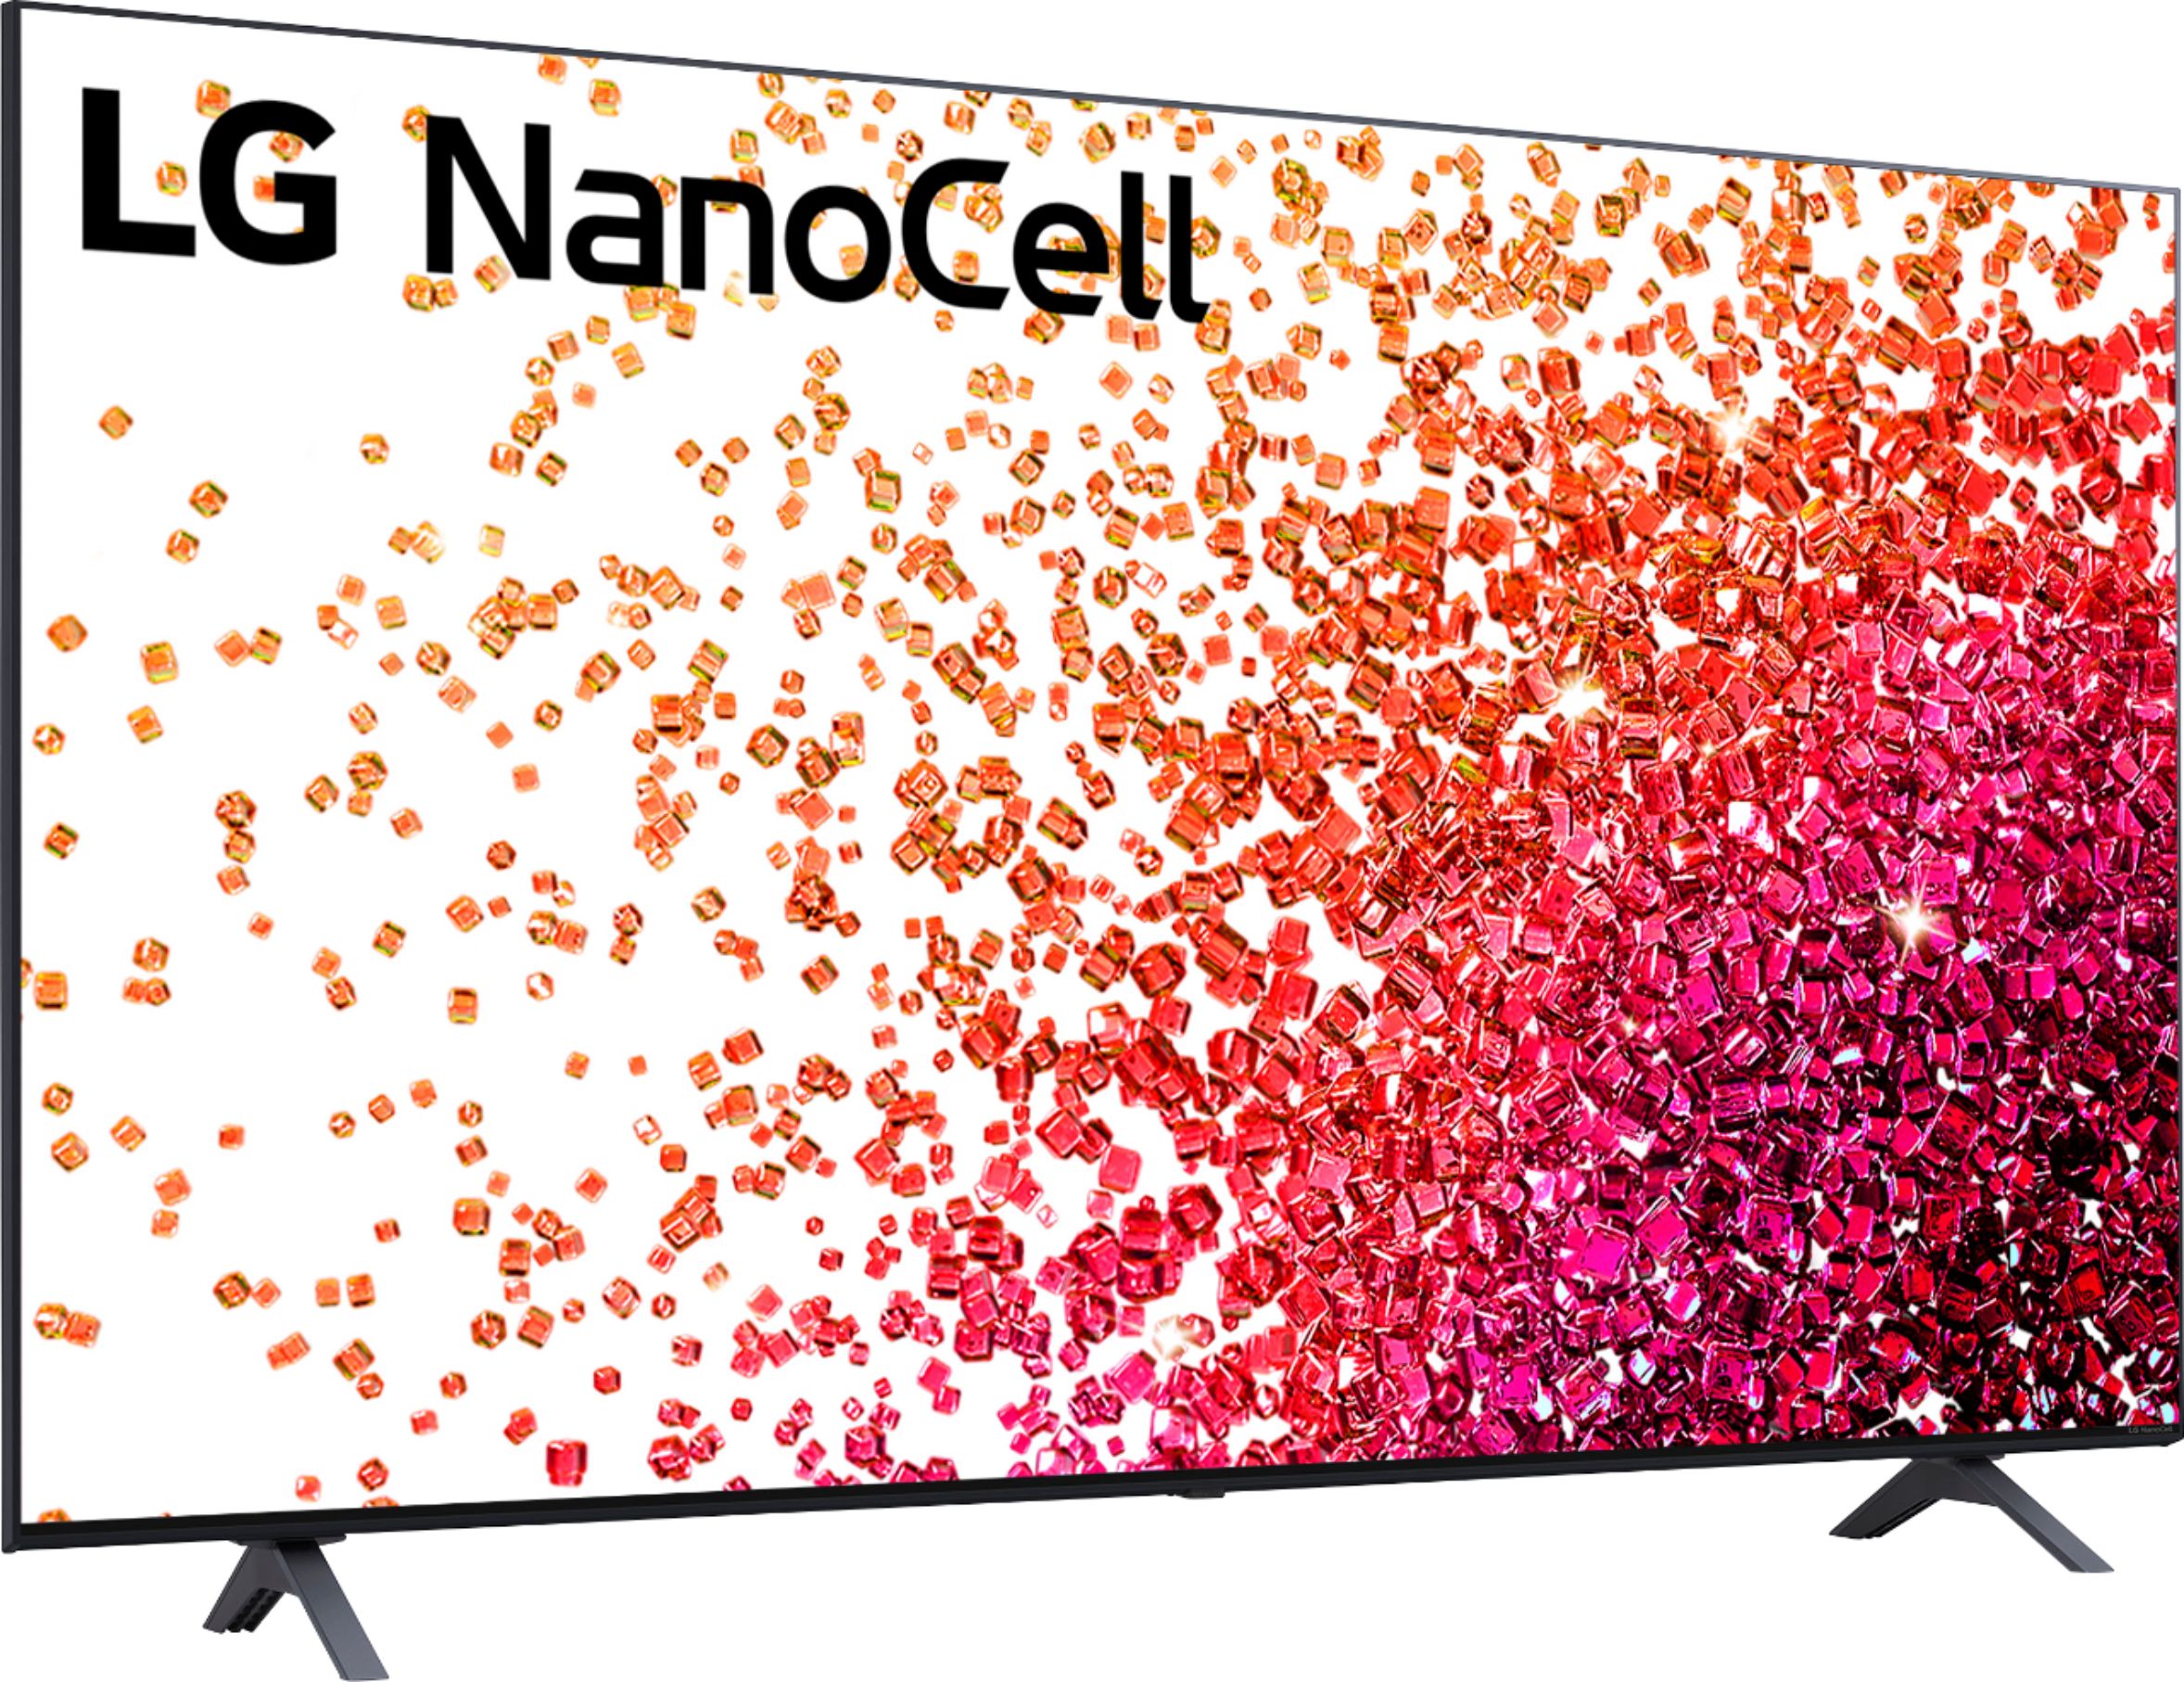 LG: Pantalla LG NanoCell 65 4K SMART TV con ThinQ AI 65NANO75SQA